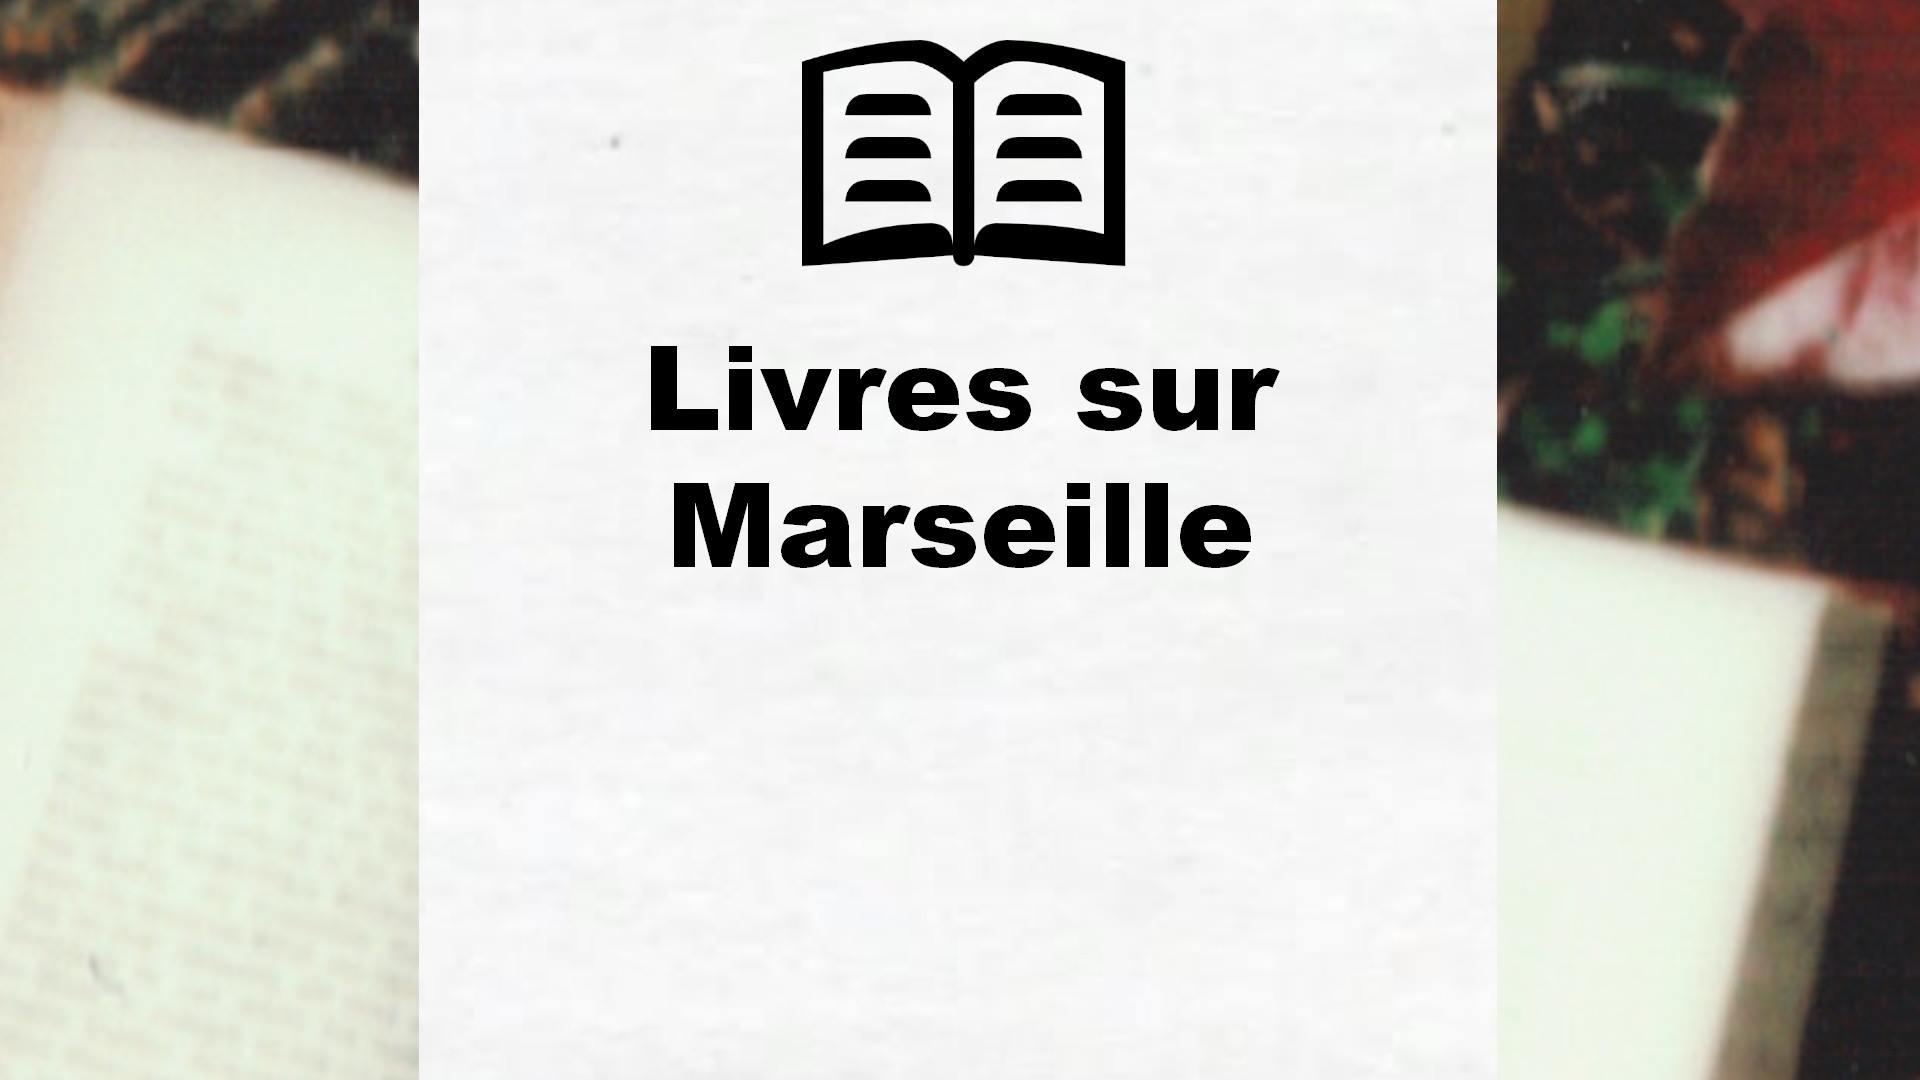 Livres sur Marseille